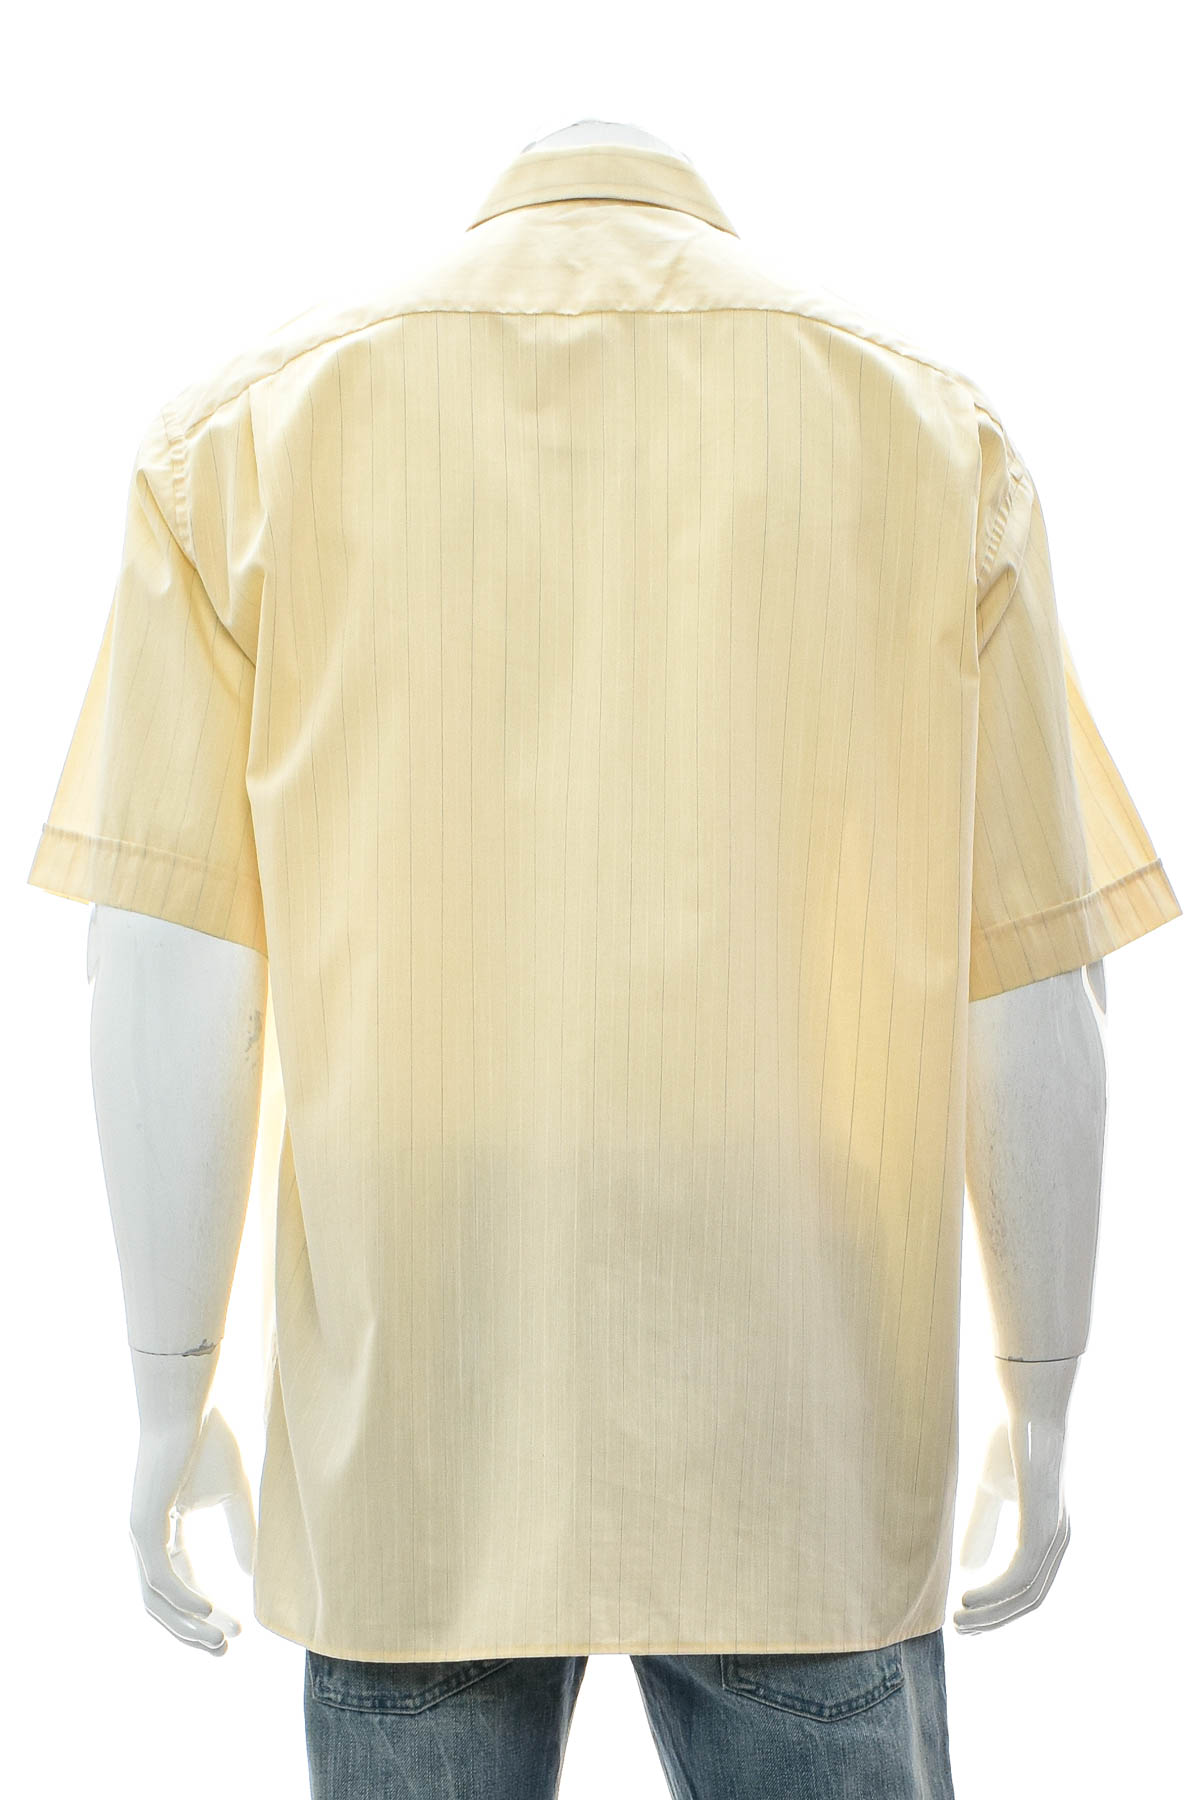 Ανδρικό πουκάμισο - Eterna - 1